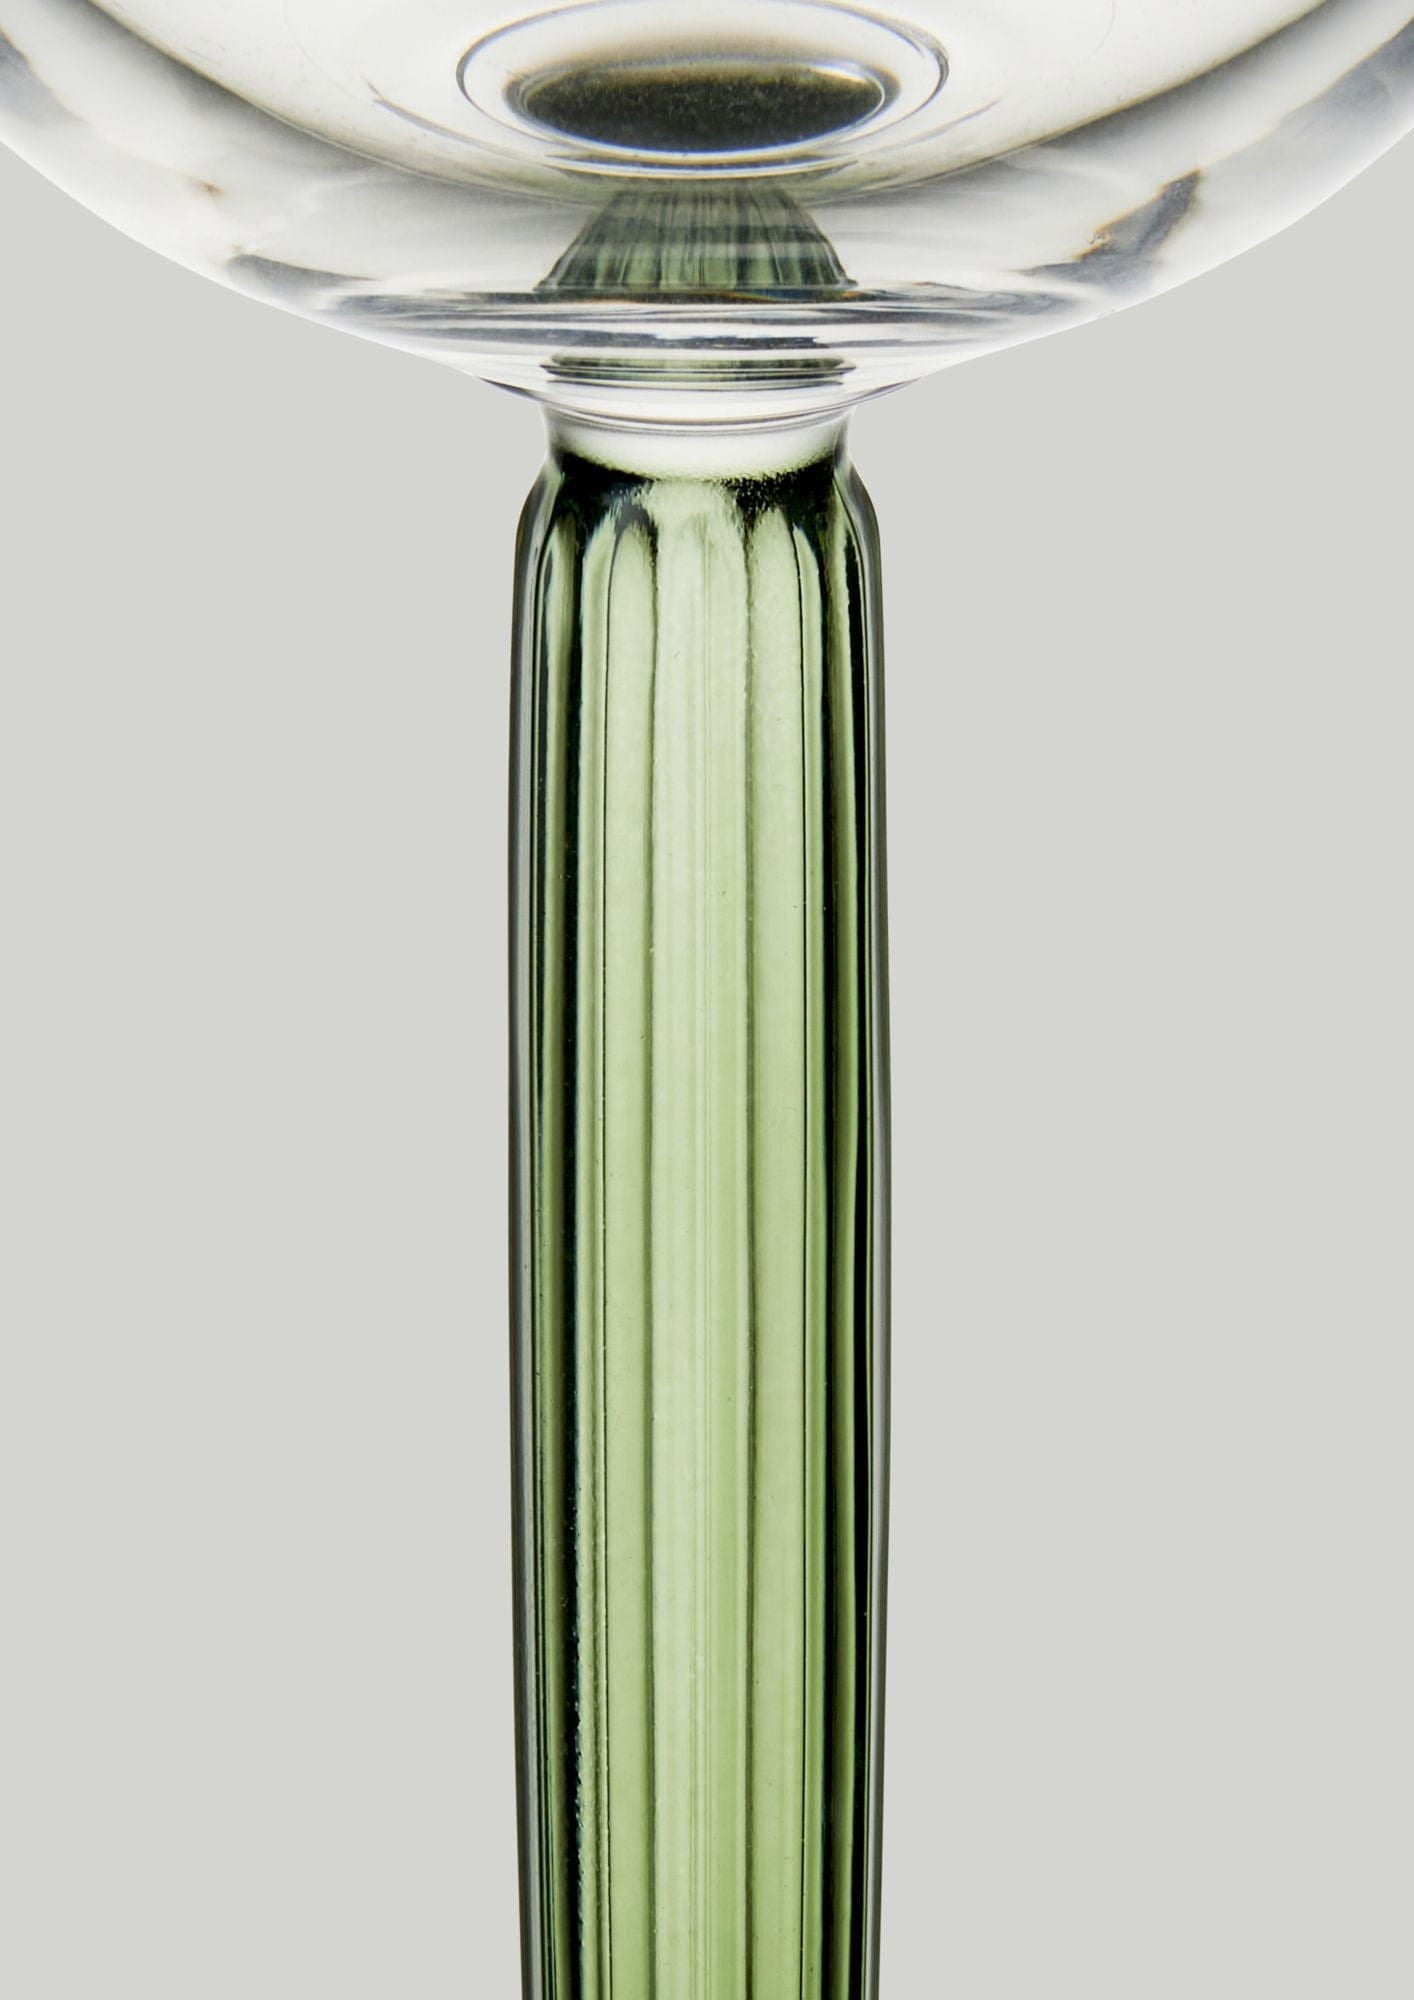 Kähler Hammershøi Champagne Glass Set av 240 ml, grönt